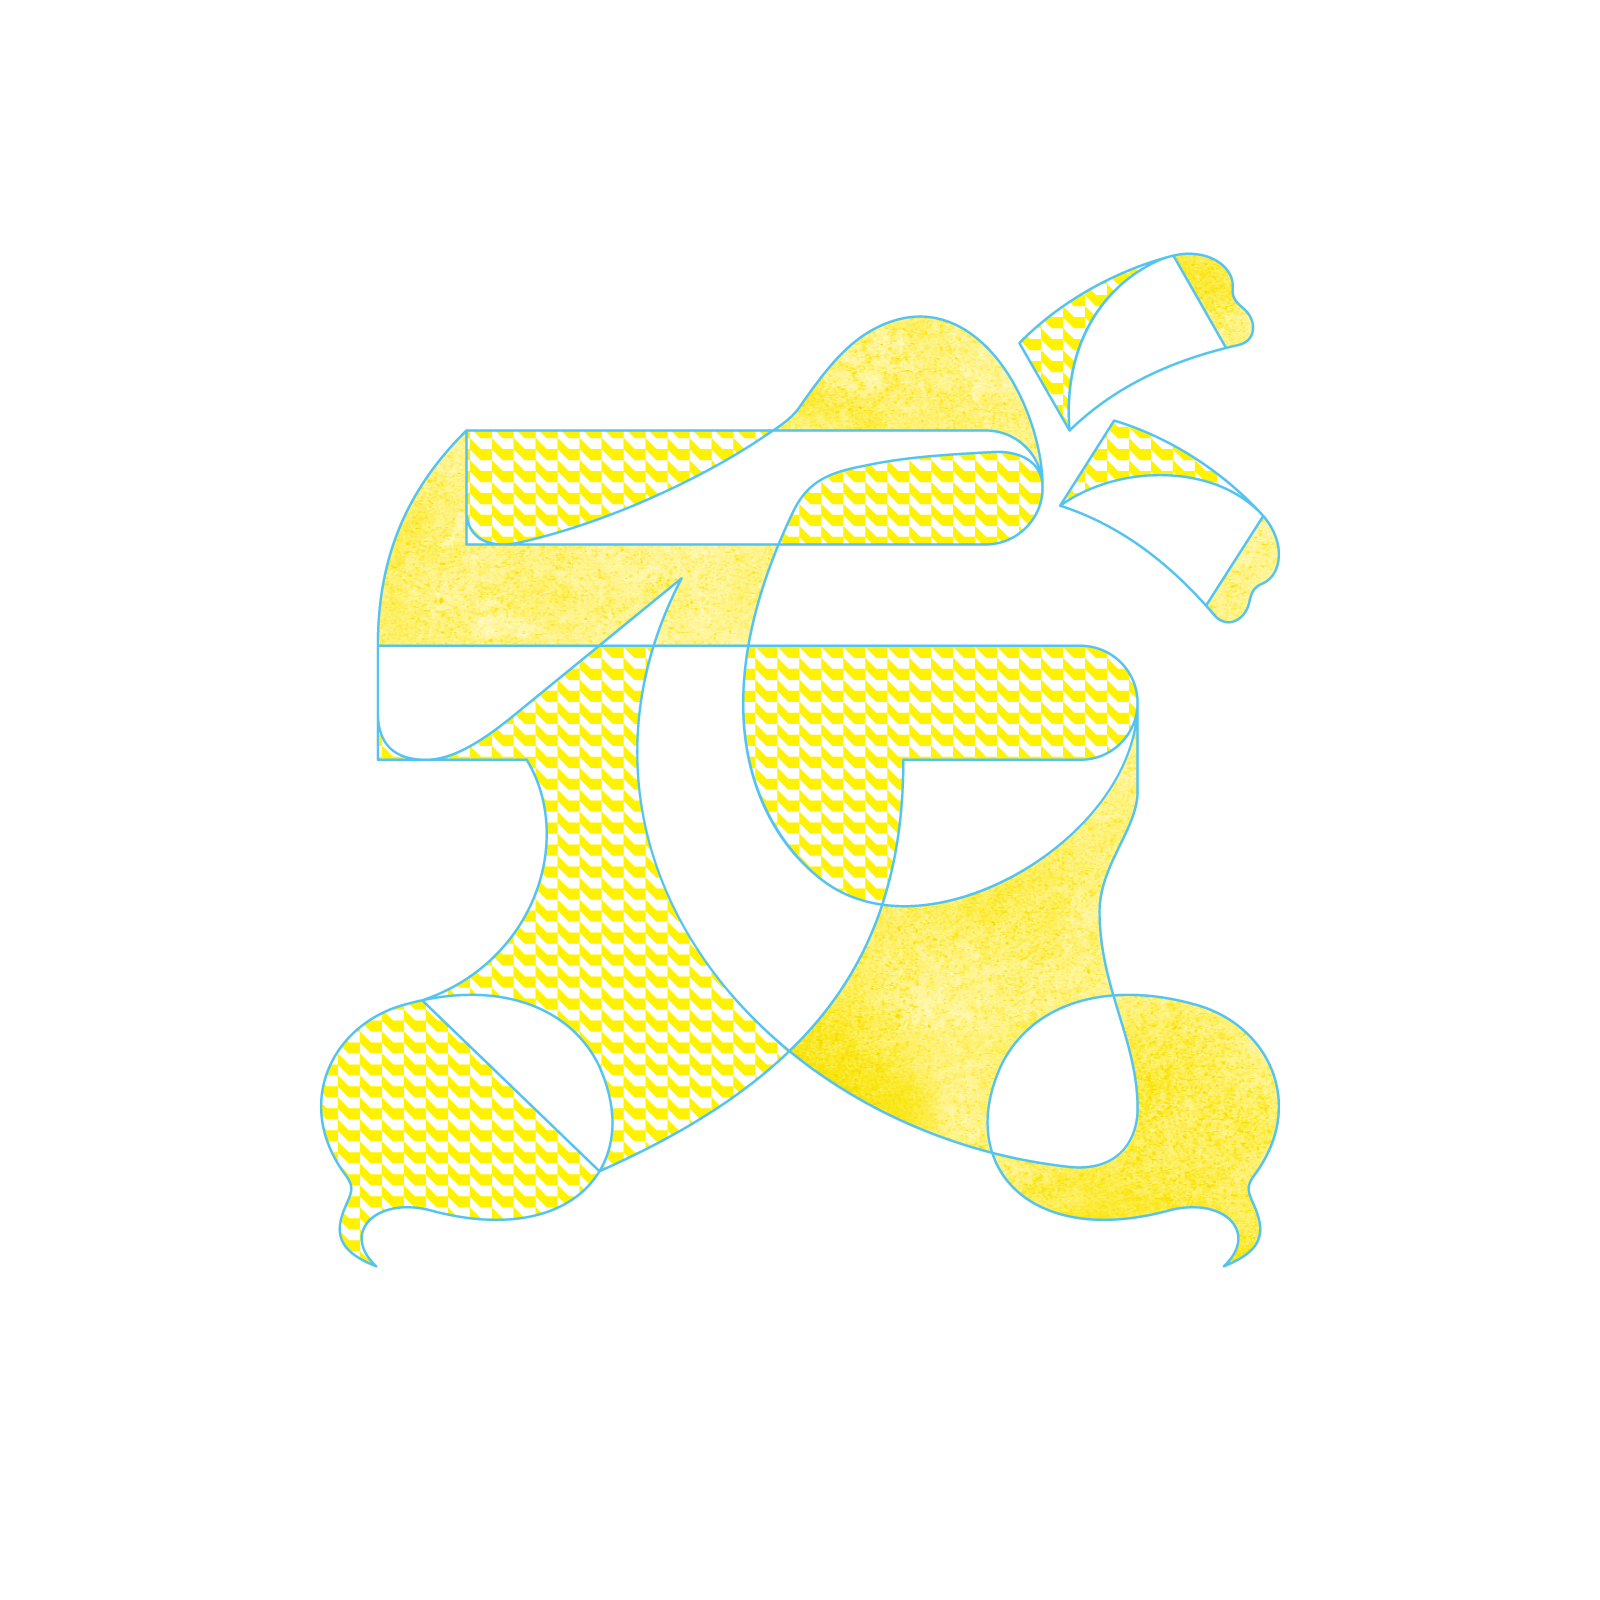 デザイントークイベント デザインで会話する ロゴマーク の解説 ストーリー Typographics T 日本タイポグラフィ協会 Typographics T 日本タイポグラフィ協会